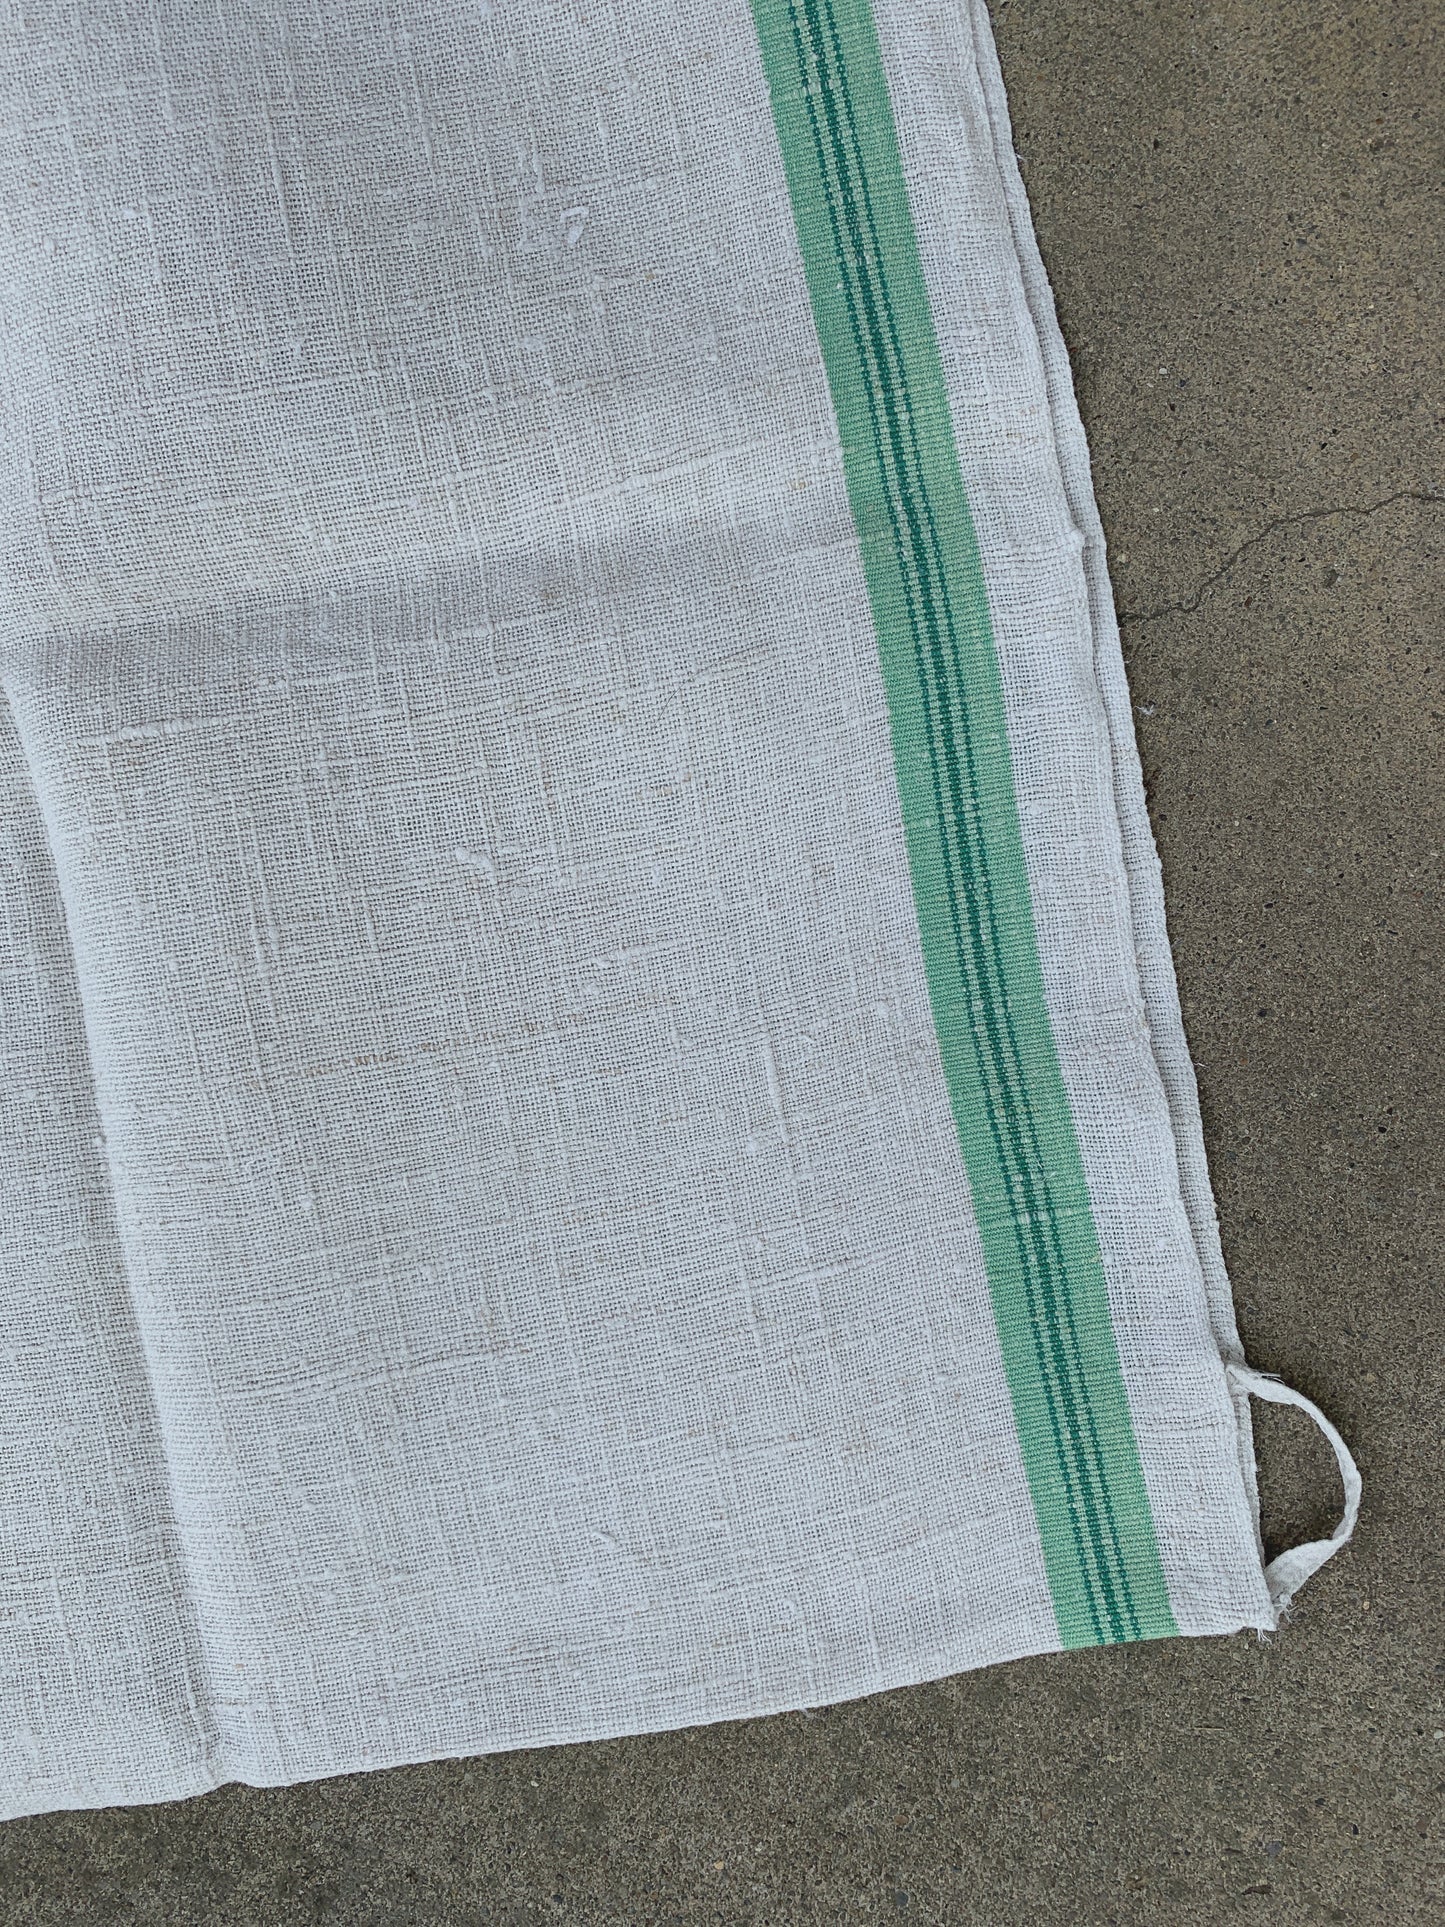 GREEN LINEN TOWELS SET OF 2